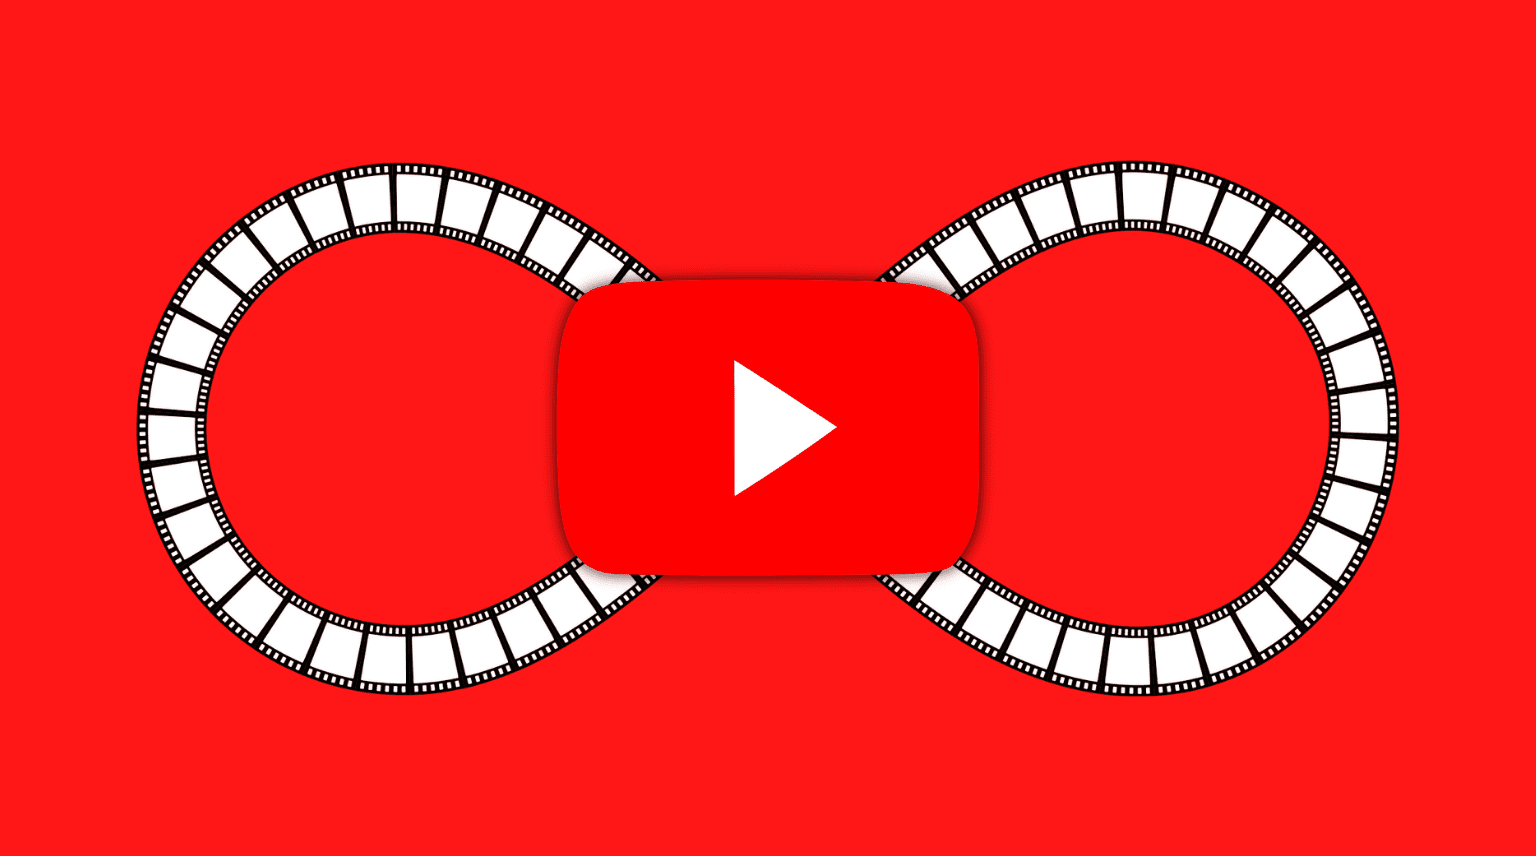 Loop YouTube videos